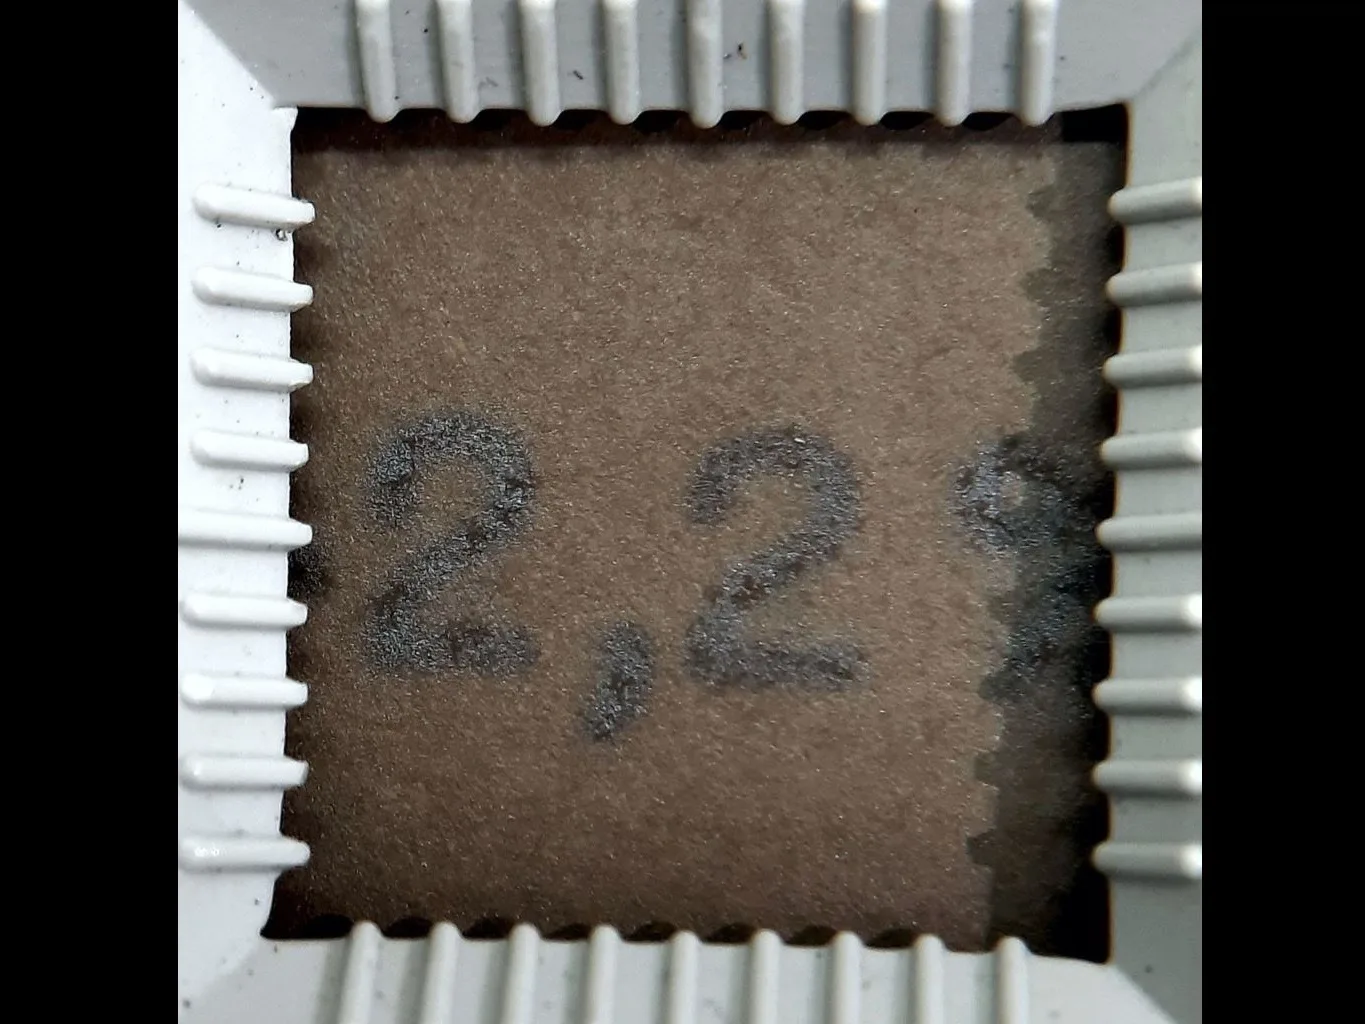 Detalhe de papel creme escurecido com o numeral “2,2%” datilografado em preto, dentro de esquadro branco quadrado